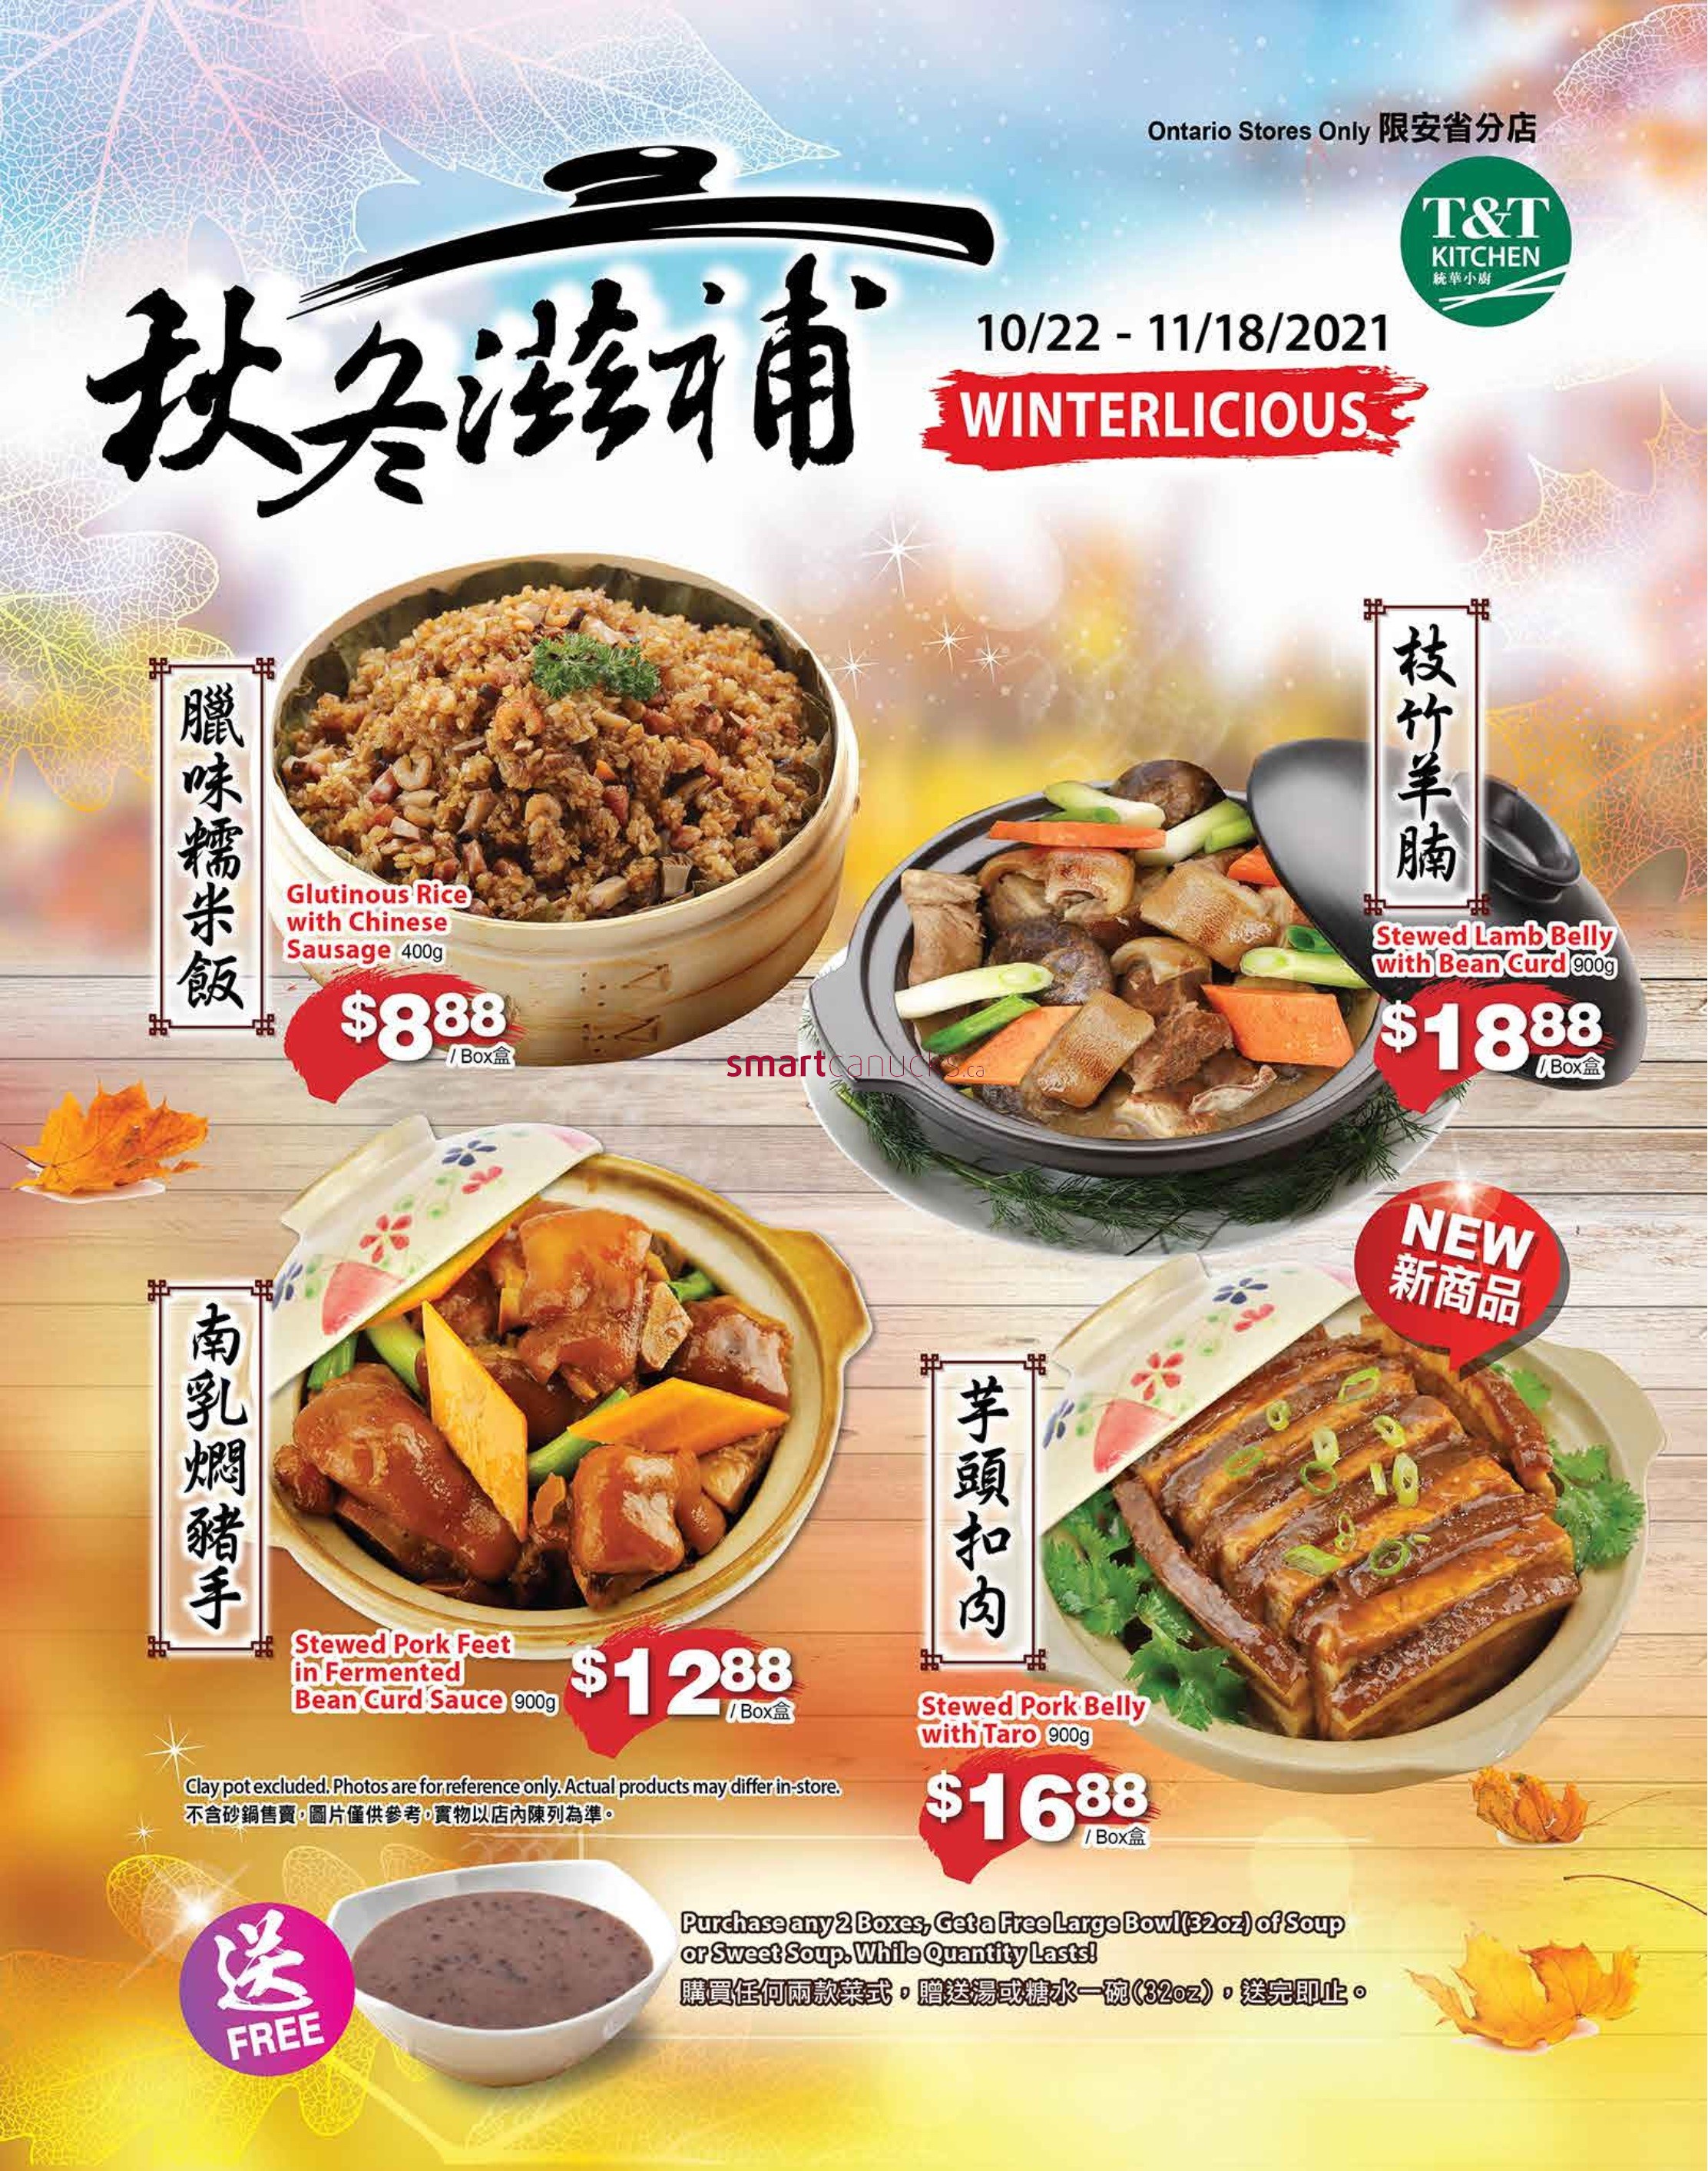 tt-supermarket-waterloo-flyer-october-29-to-november-4-5.jpg